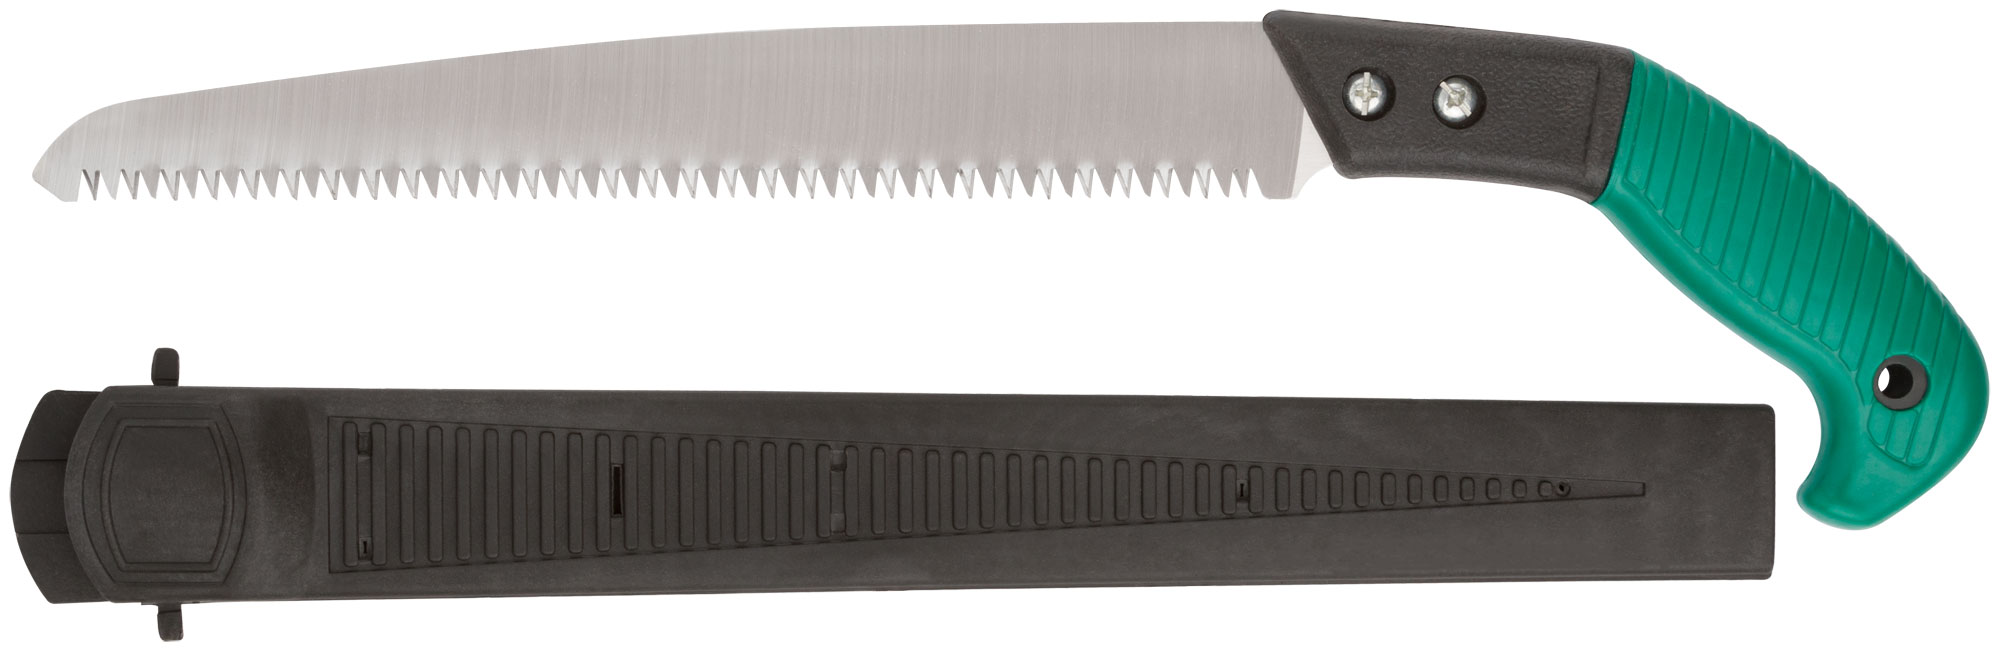 Ножовка садовая с ножнами, 300 мм, FIT 40595 ножовка садовая 270 мм деревянная ручка